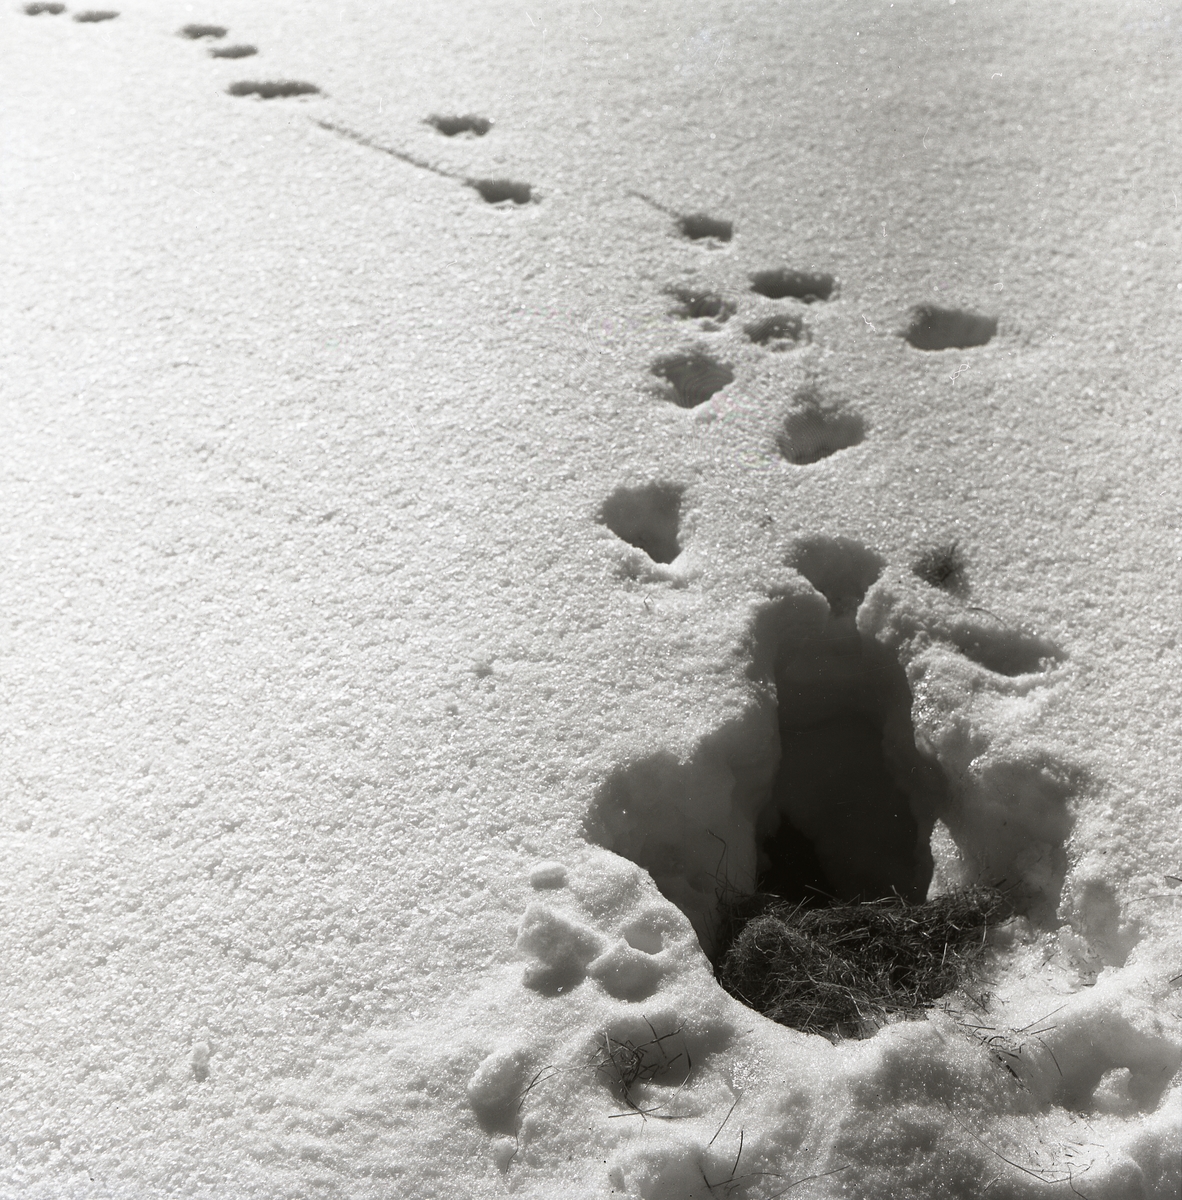 Rävspår intill ett råttbo i snön, 29 mars 1958.